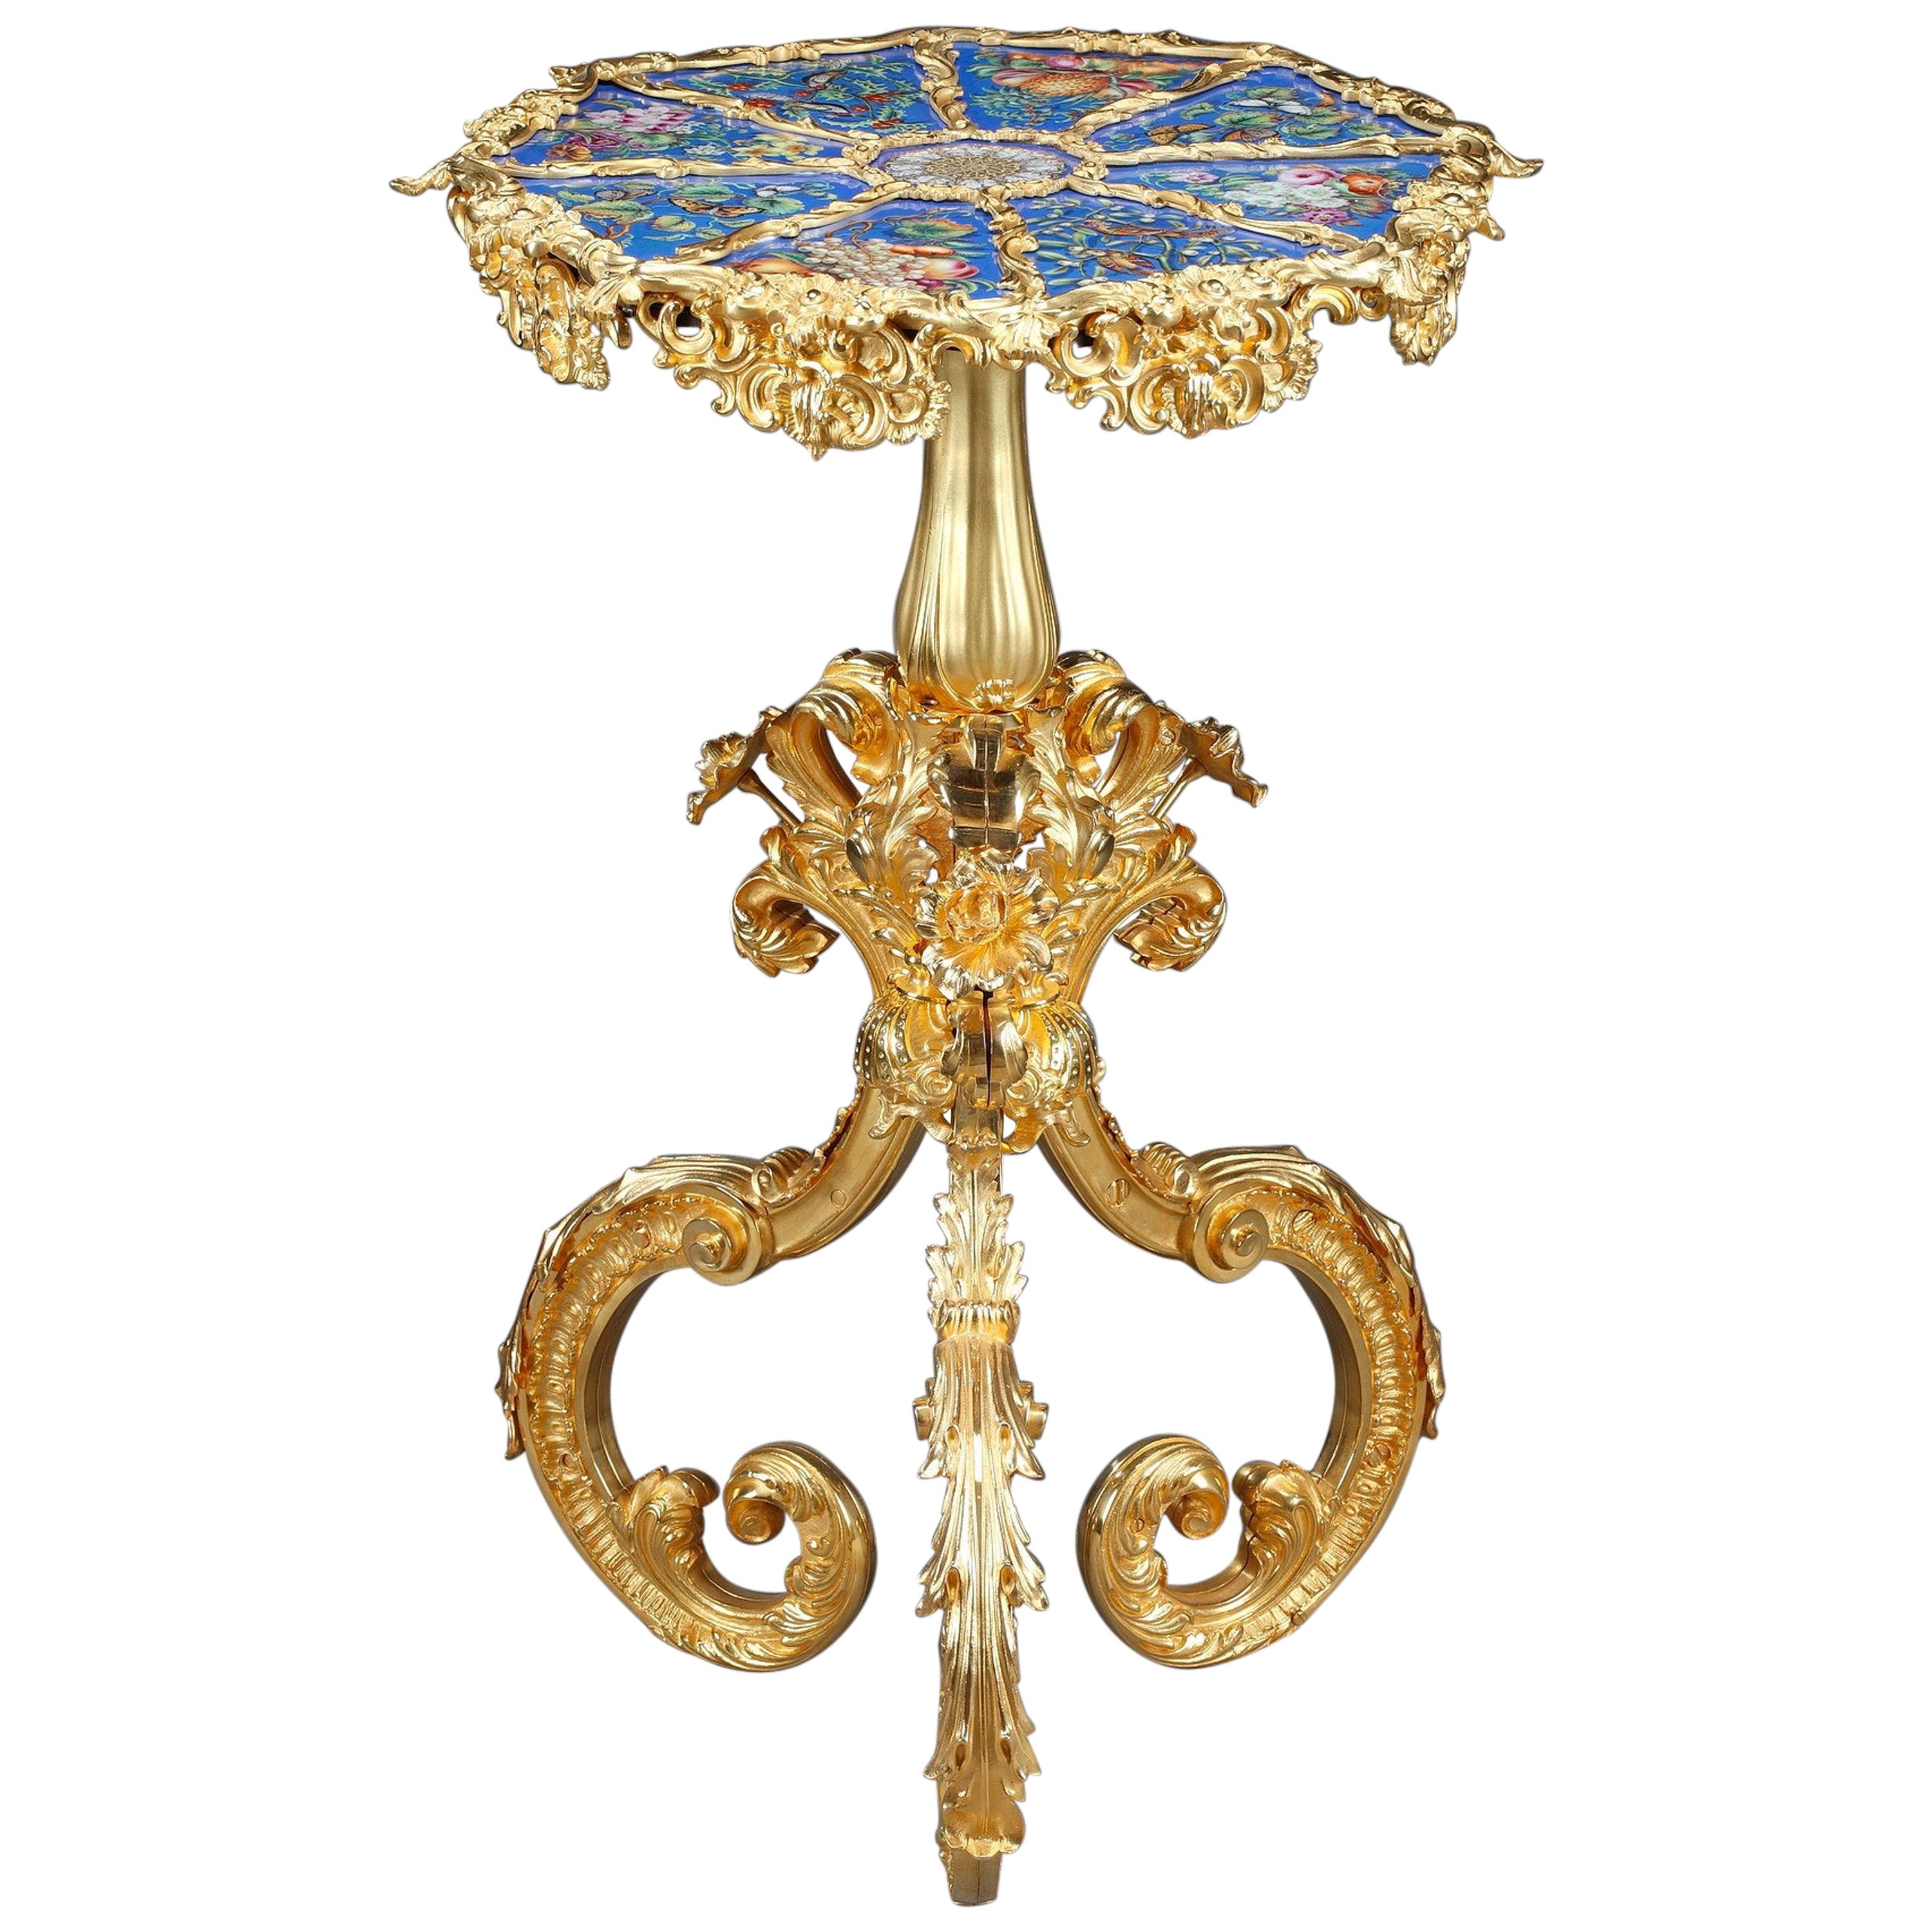 Porzellan-Gueridon-Tisch aus dem 19. Jahrhundert im Rocaille-Stil